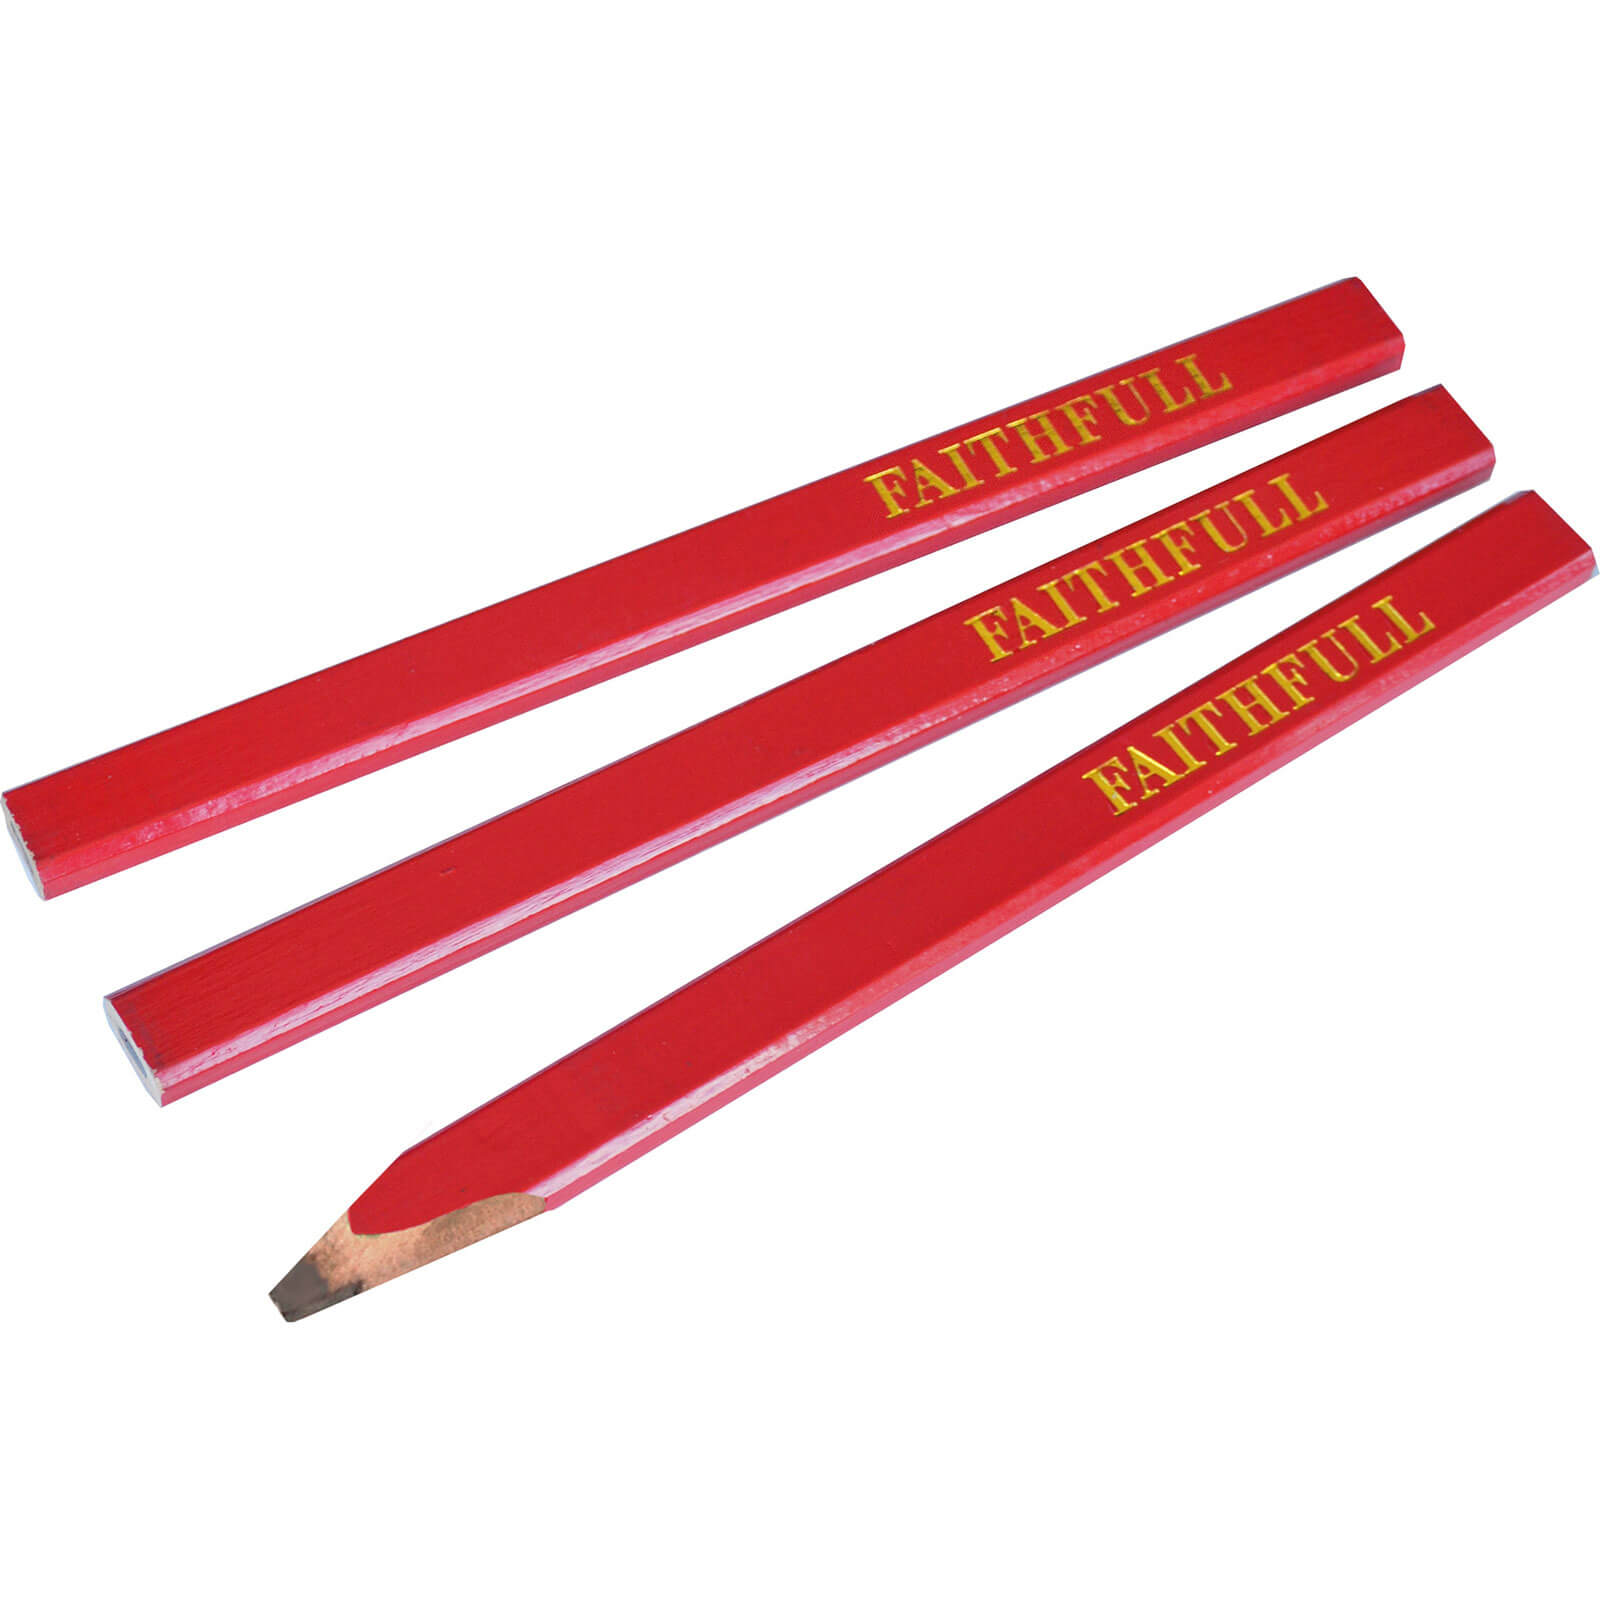 Image of Faithfull Medium Carpenters Pencils Red Pack of 3